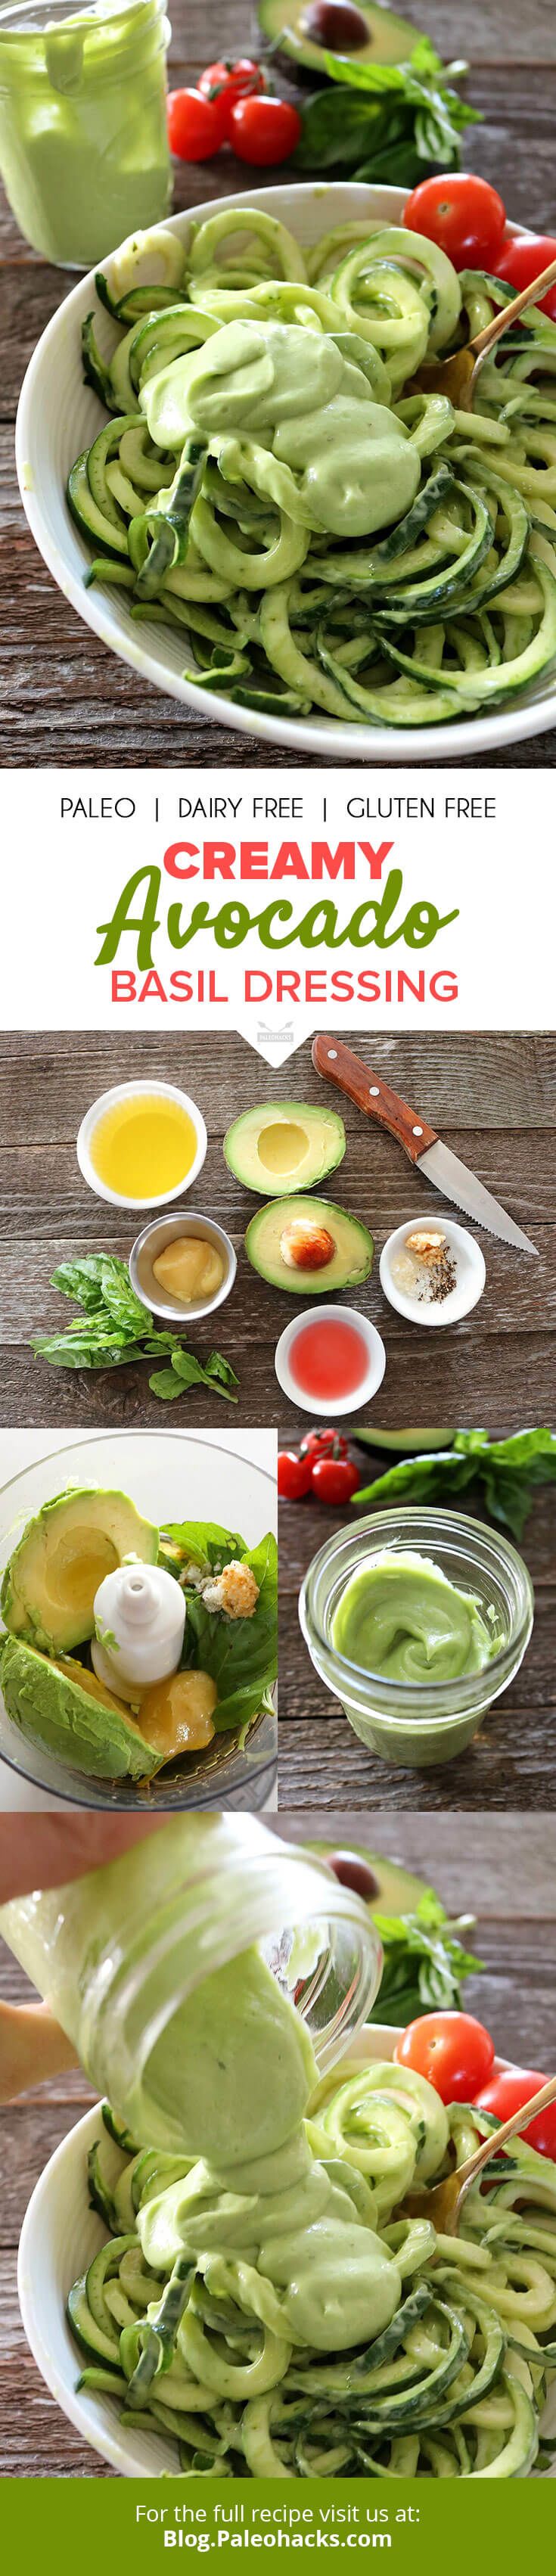 avocado dressing recipe